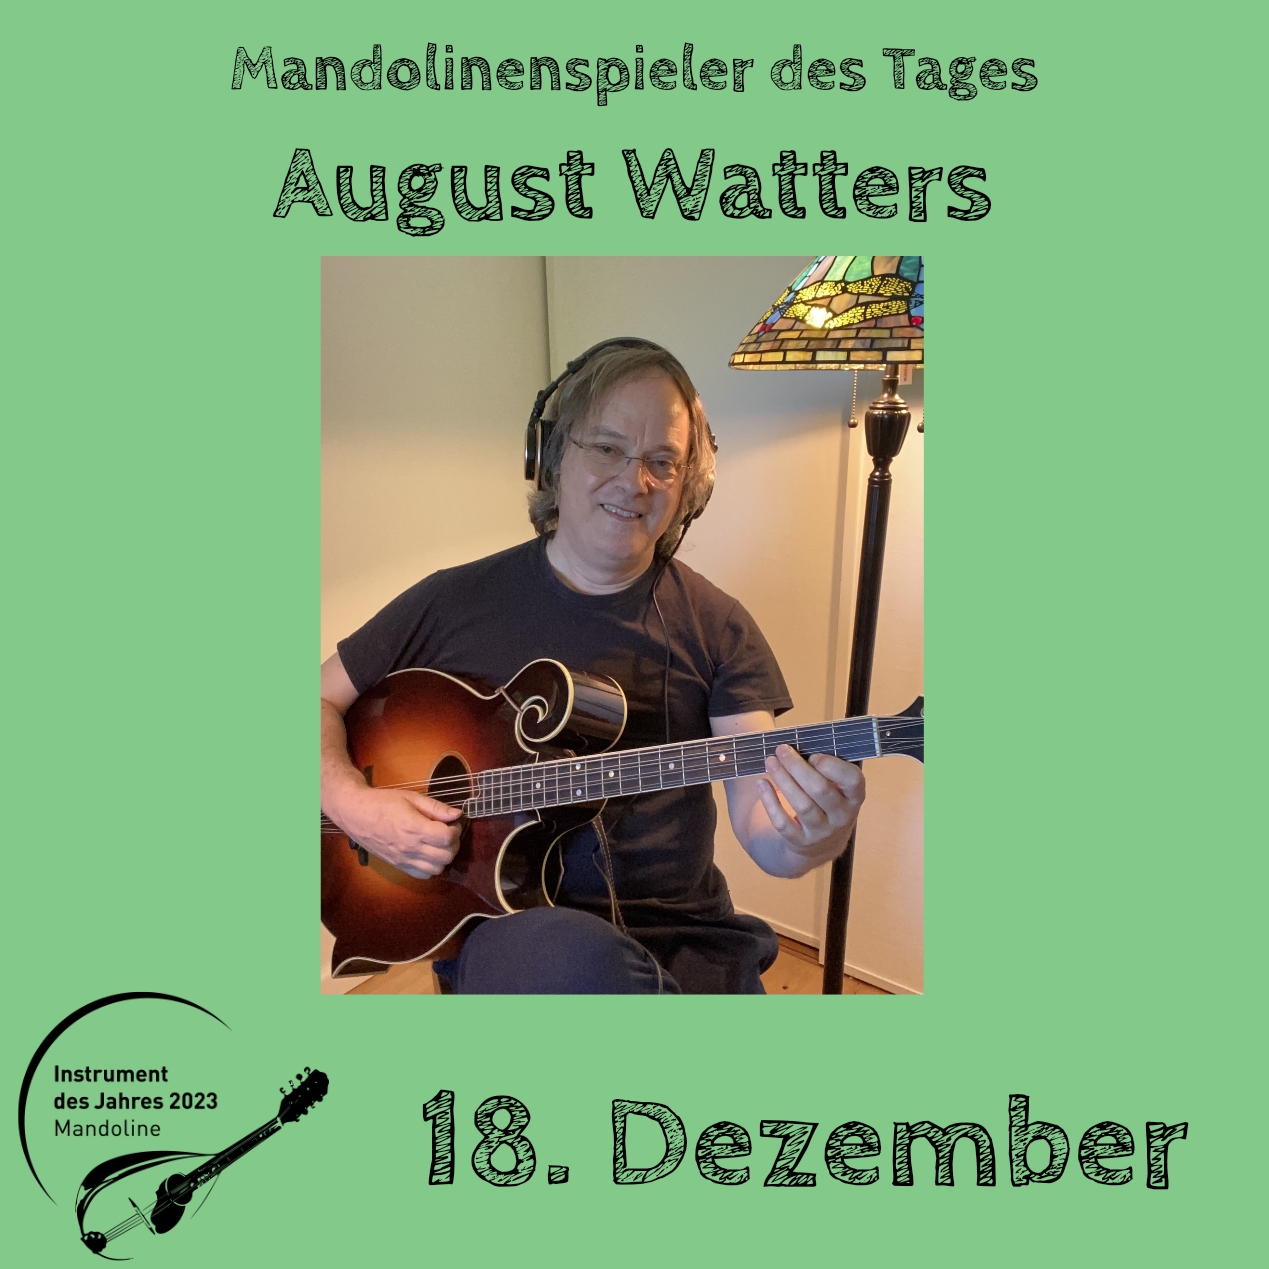 18. Dezember - August Watters Instrument des Jahres 2023 Mandolinenspieler Mandolinenspielerin des Tages